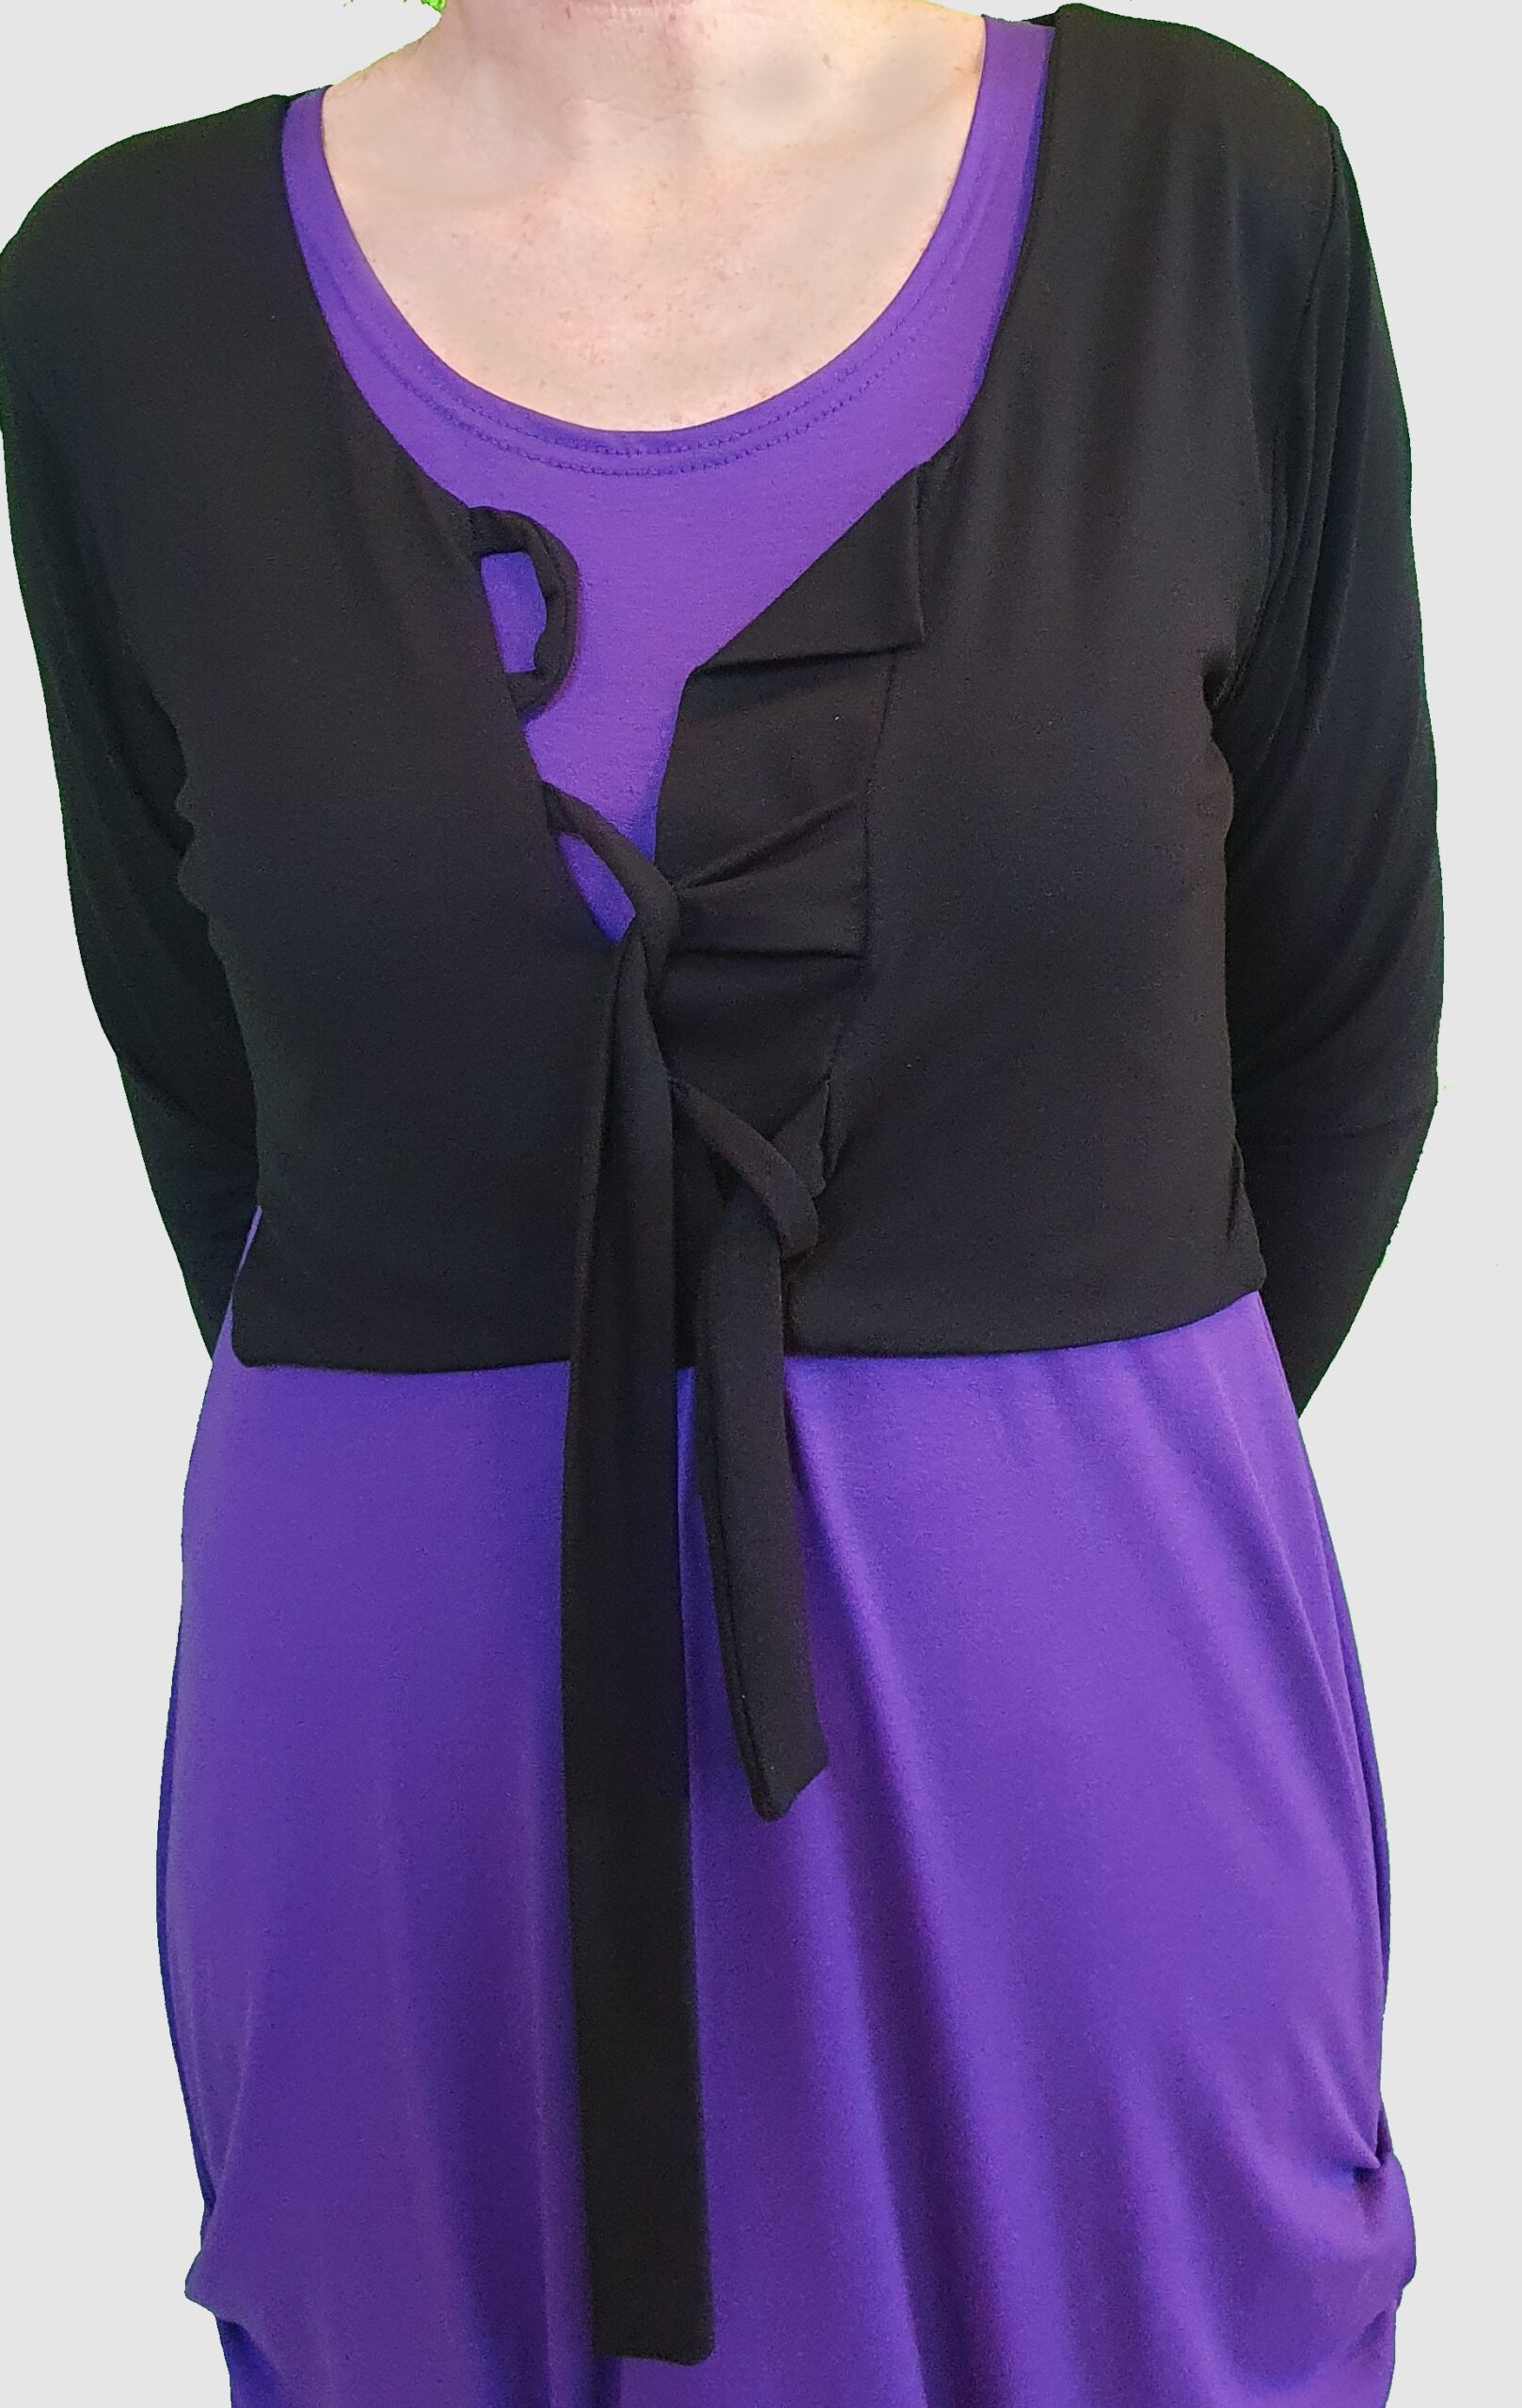 Behoren Ruim schudden Model "Mika" is een fantastische nieuwe jurk in iedere gewenste kleur! -  SJÀZZ Design